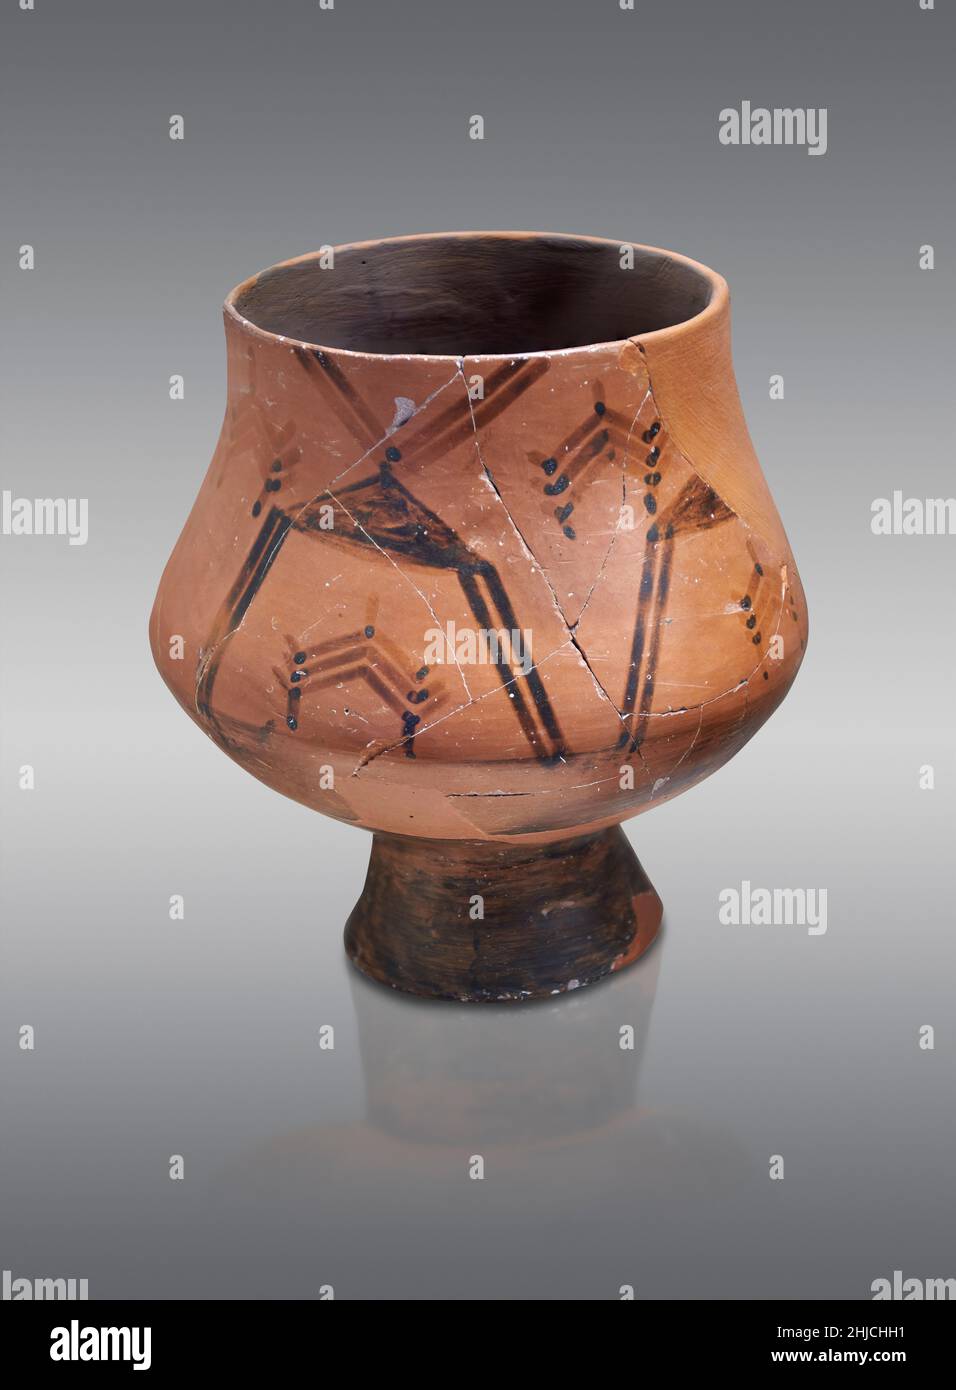 Ancienne poterie grecque helladique piriforme bocal avec des motifs géométriques, Tiryns, 5800-5300 av. J.-C.Musée archéologique de Nafplion.: Contre le dos gris Banque D'Images